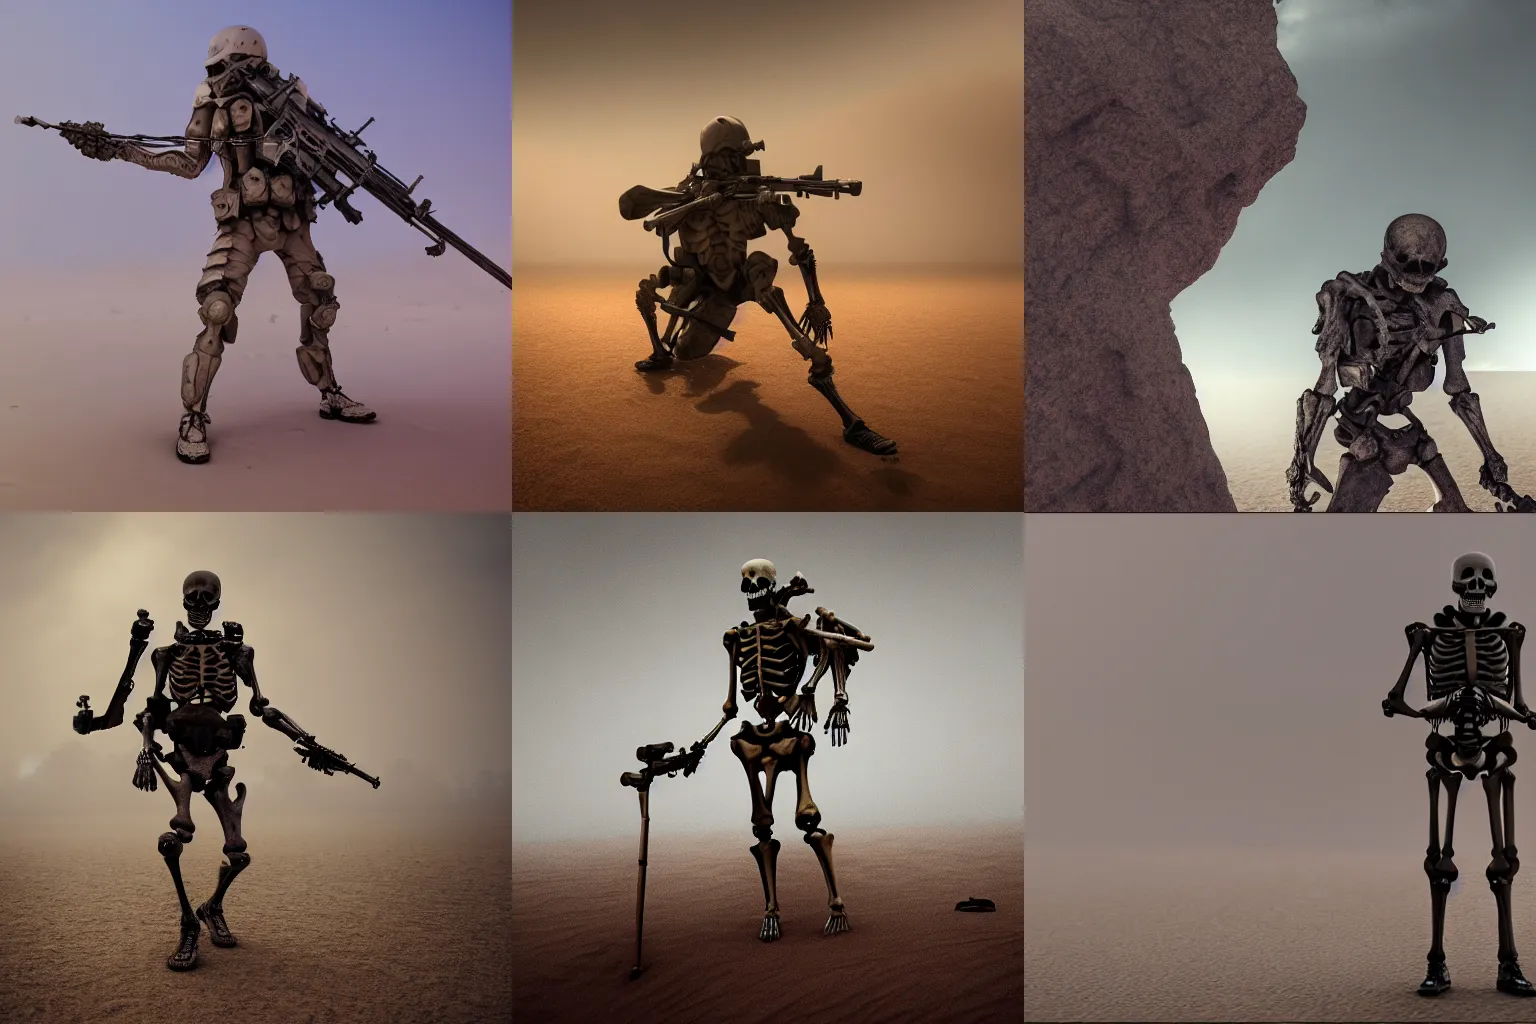 Prompt: Skeleton soldier, tactical gear, cinematic composition, Octane render, fog, sand, desert, hyper realistic, 4k resolution